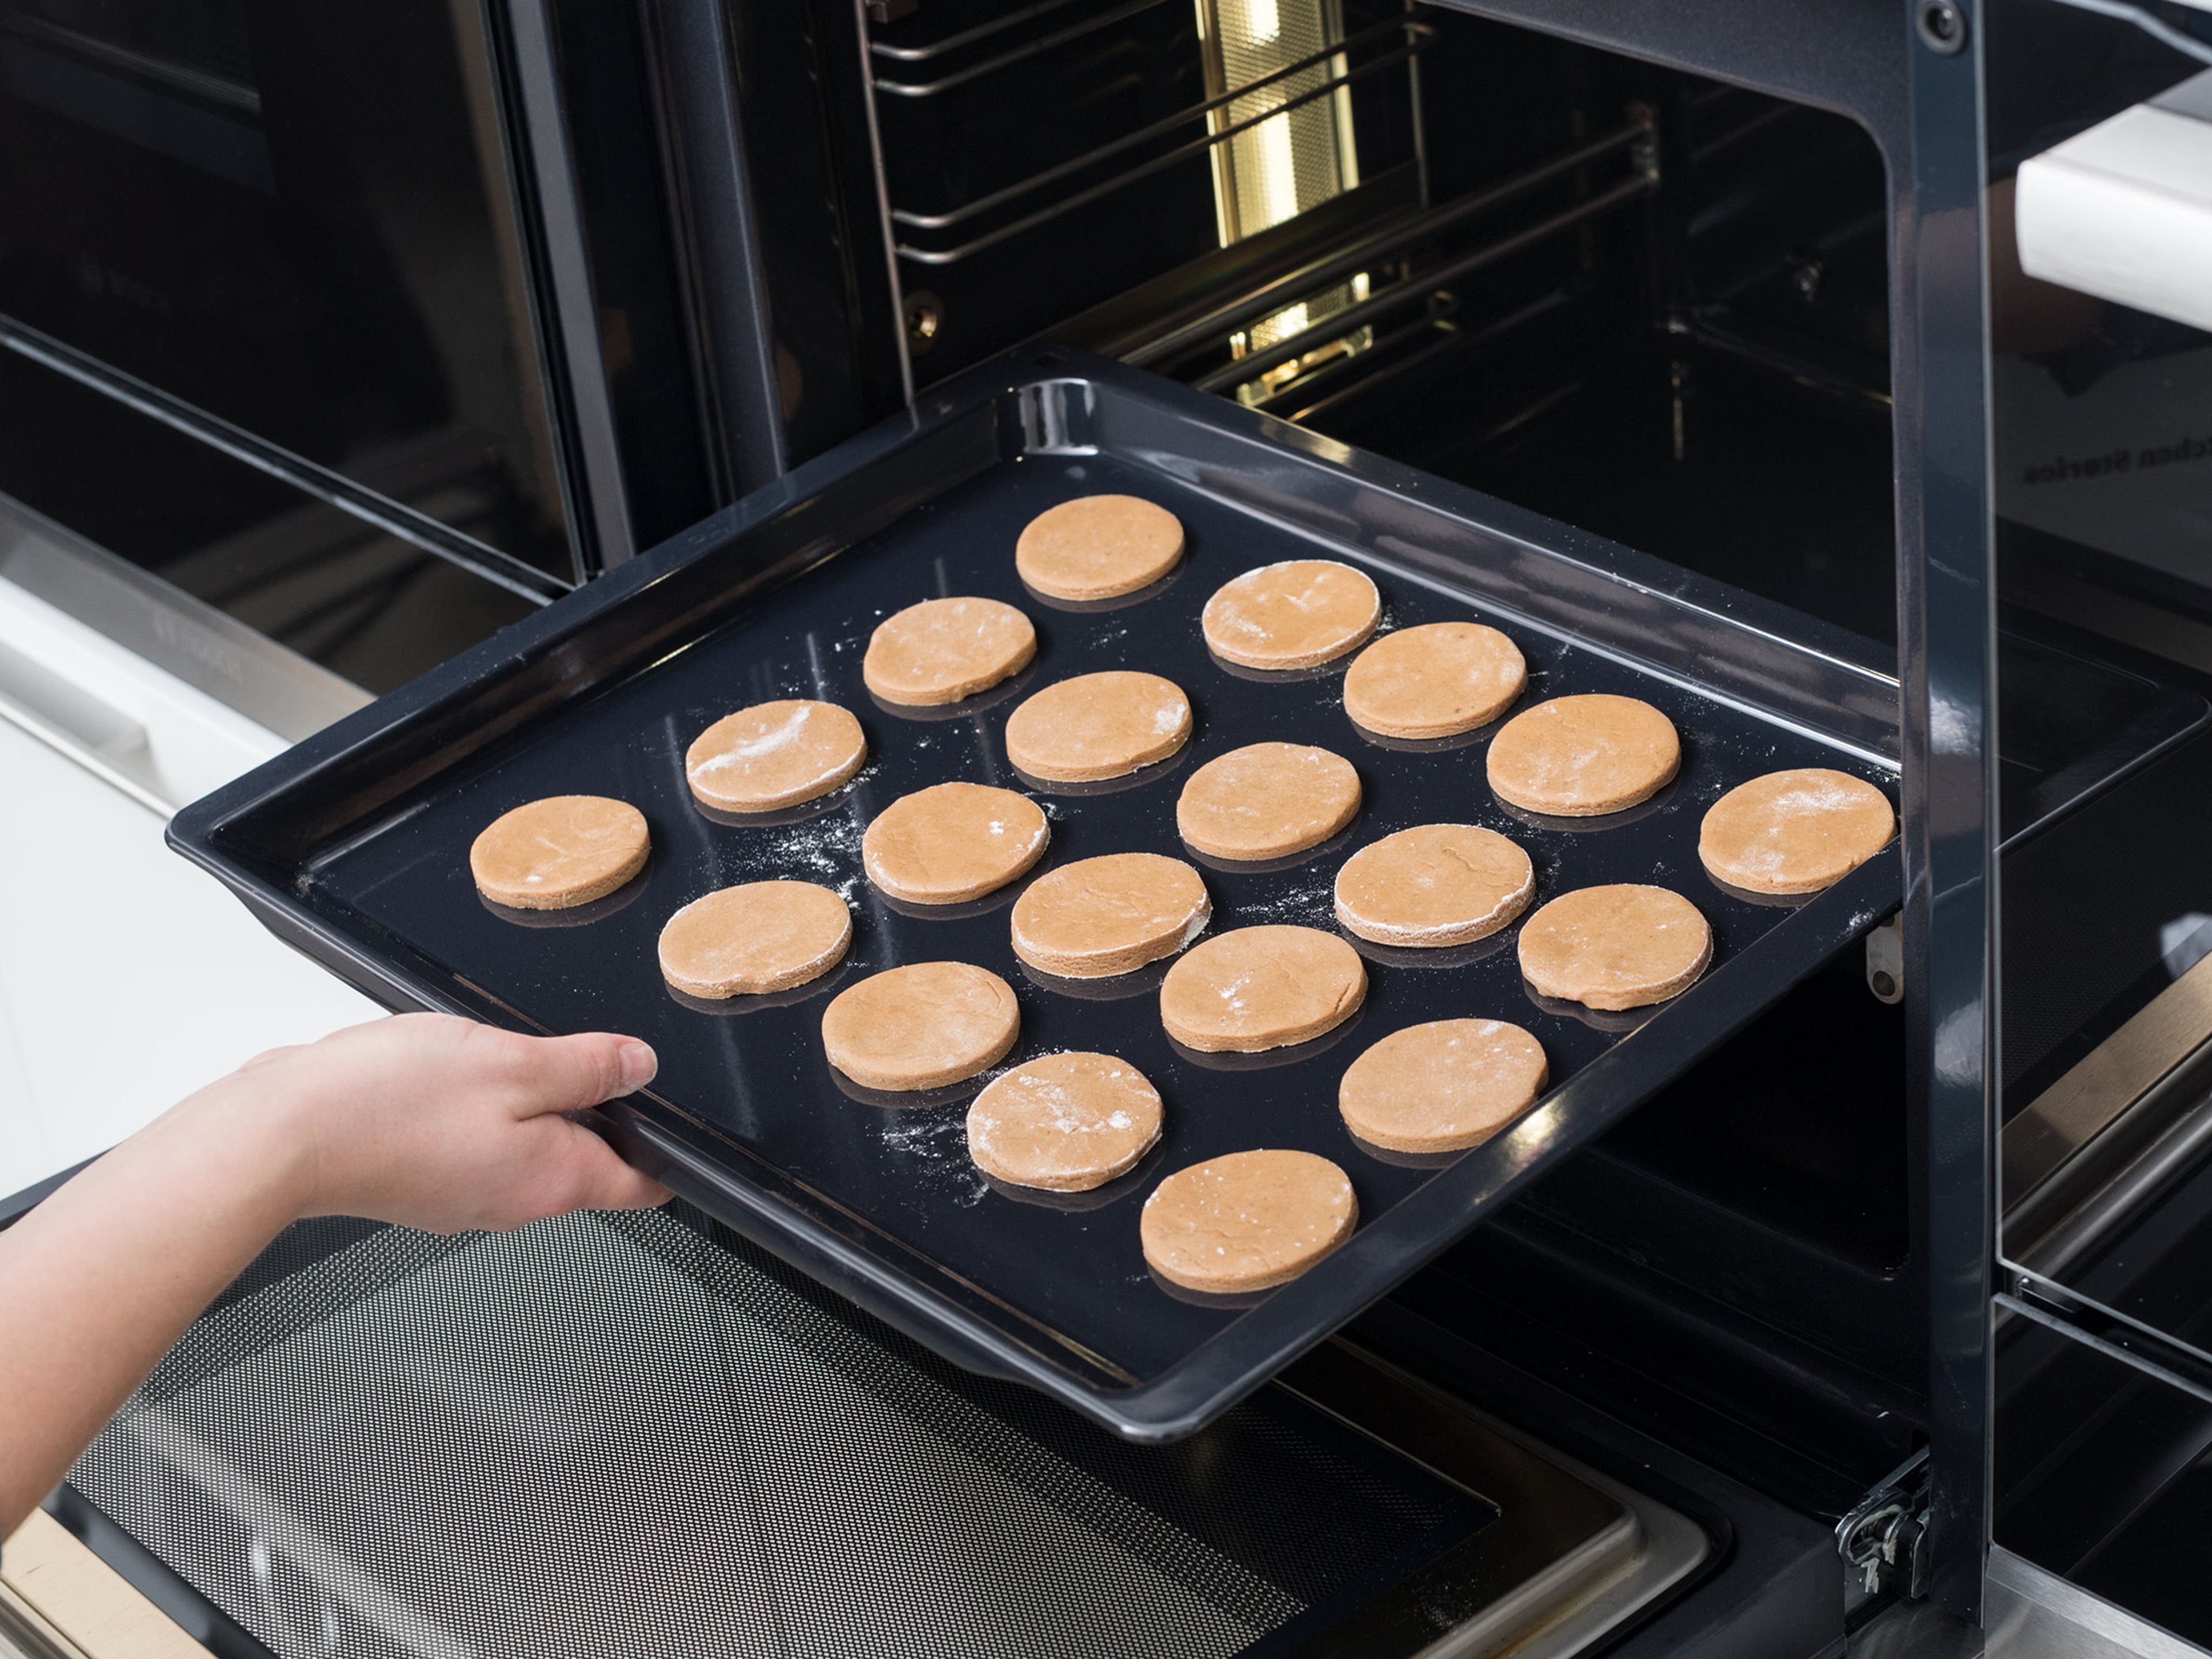 Backofen auf 200°C vorheizen. Teig auf einer bemehlten Arbeitsfläche ca. 3/4-cm dick ausrollen. Kekse ausstechen und auf einem Backblech für ca.8 – 10 Min. backen. Die fertigen Cookies komplett auskühlen lassen.